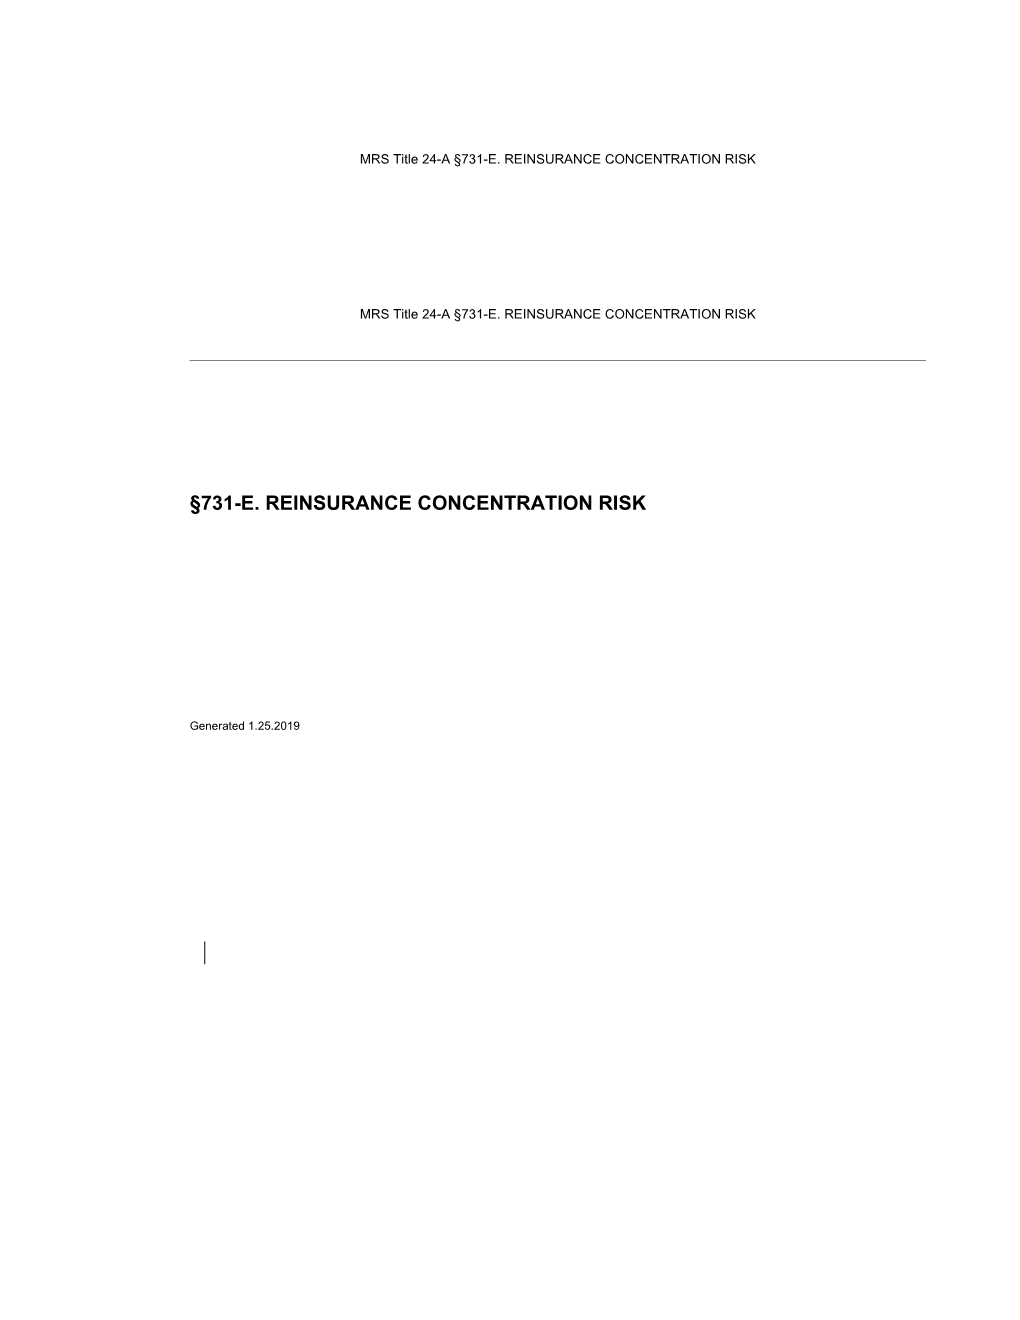 MRS Title 24-A 731-E. REINSURANCE CONCENTRATION RISK